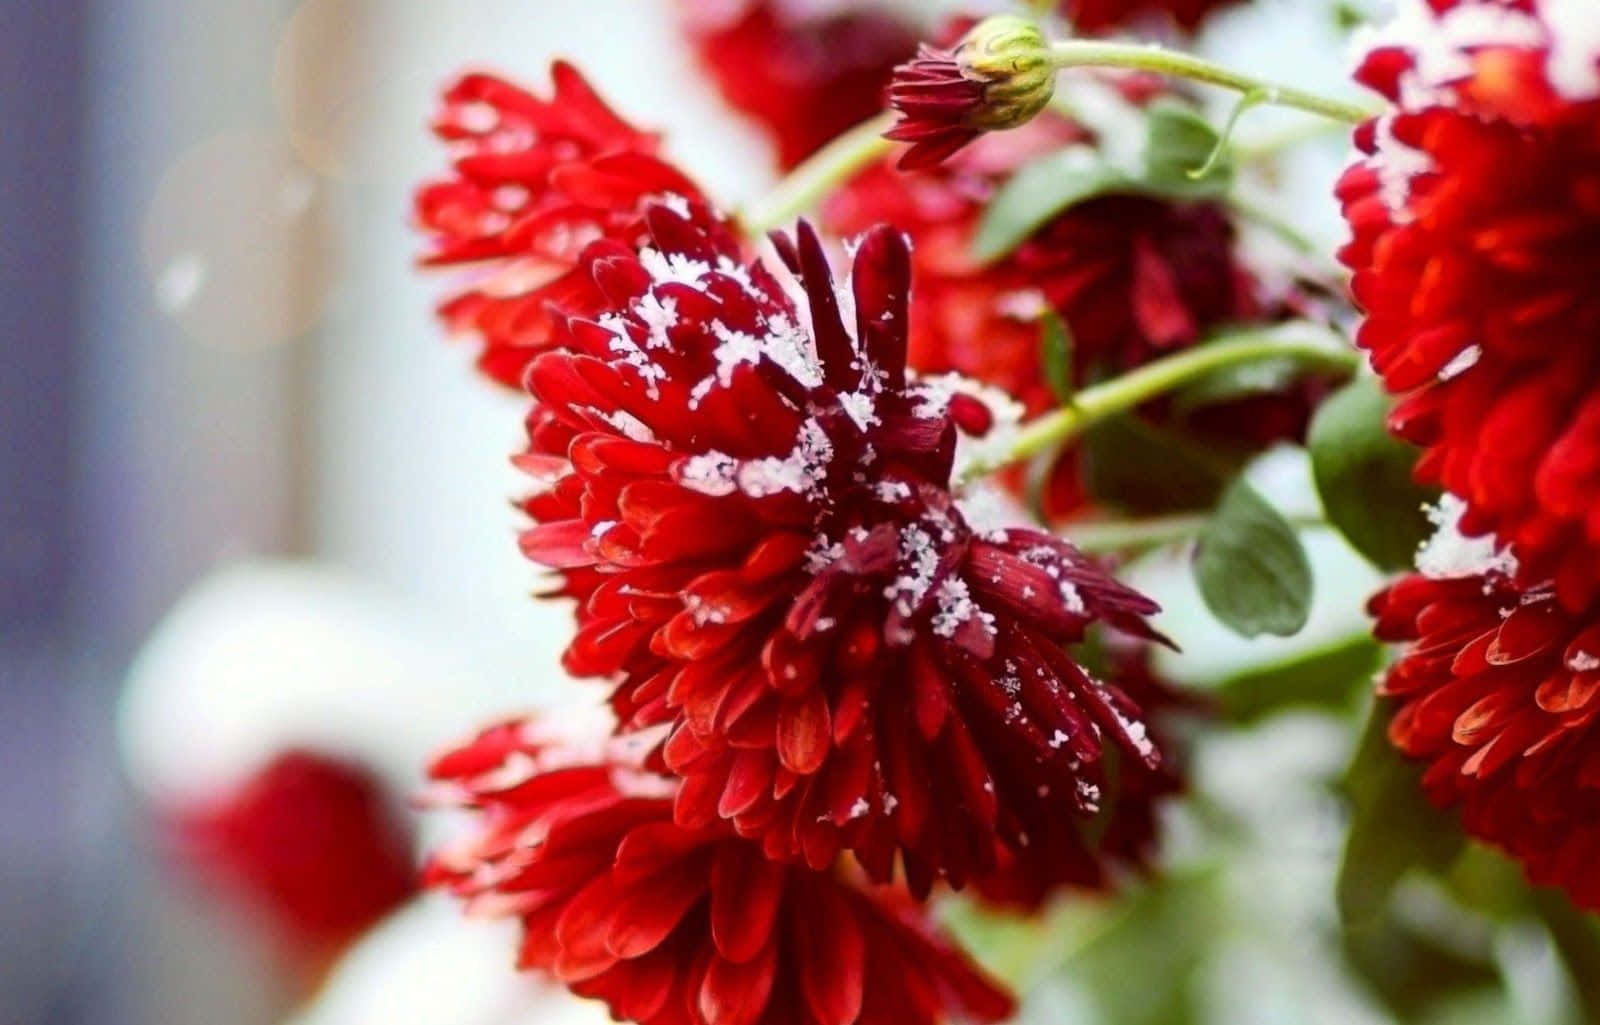 Unpintoresco Paisaje Invernal Que Muestra Vibrantes Flores De Invierno En Plena Floración Entre Hojas Cubiertas De Nieve. Fondo de pantalla